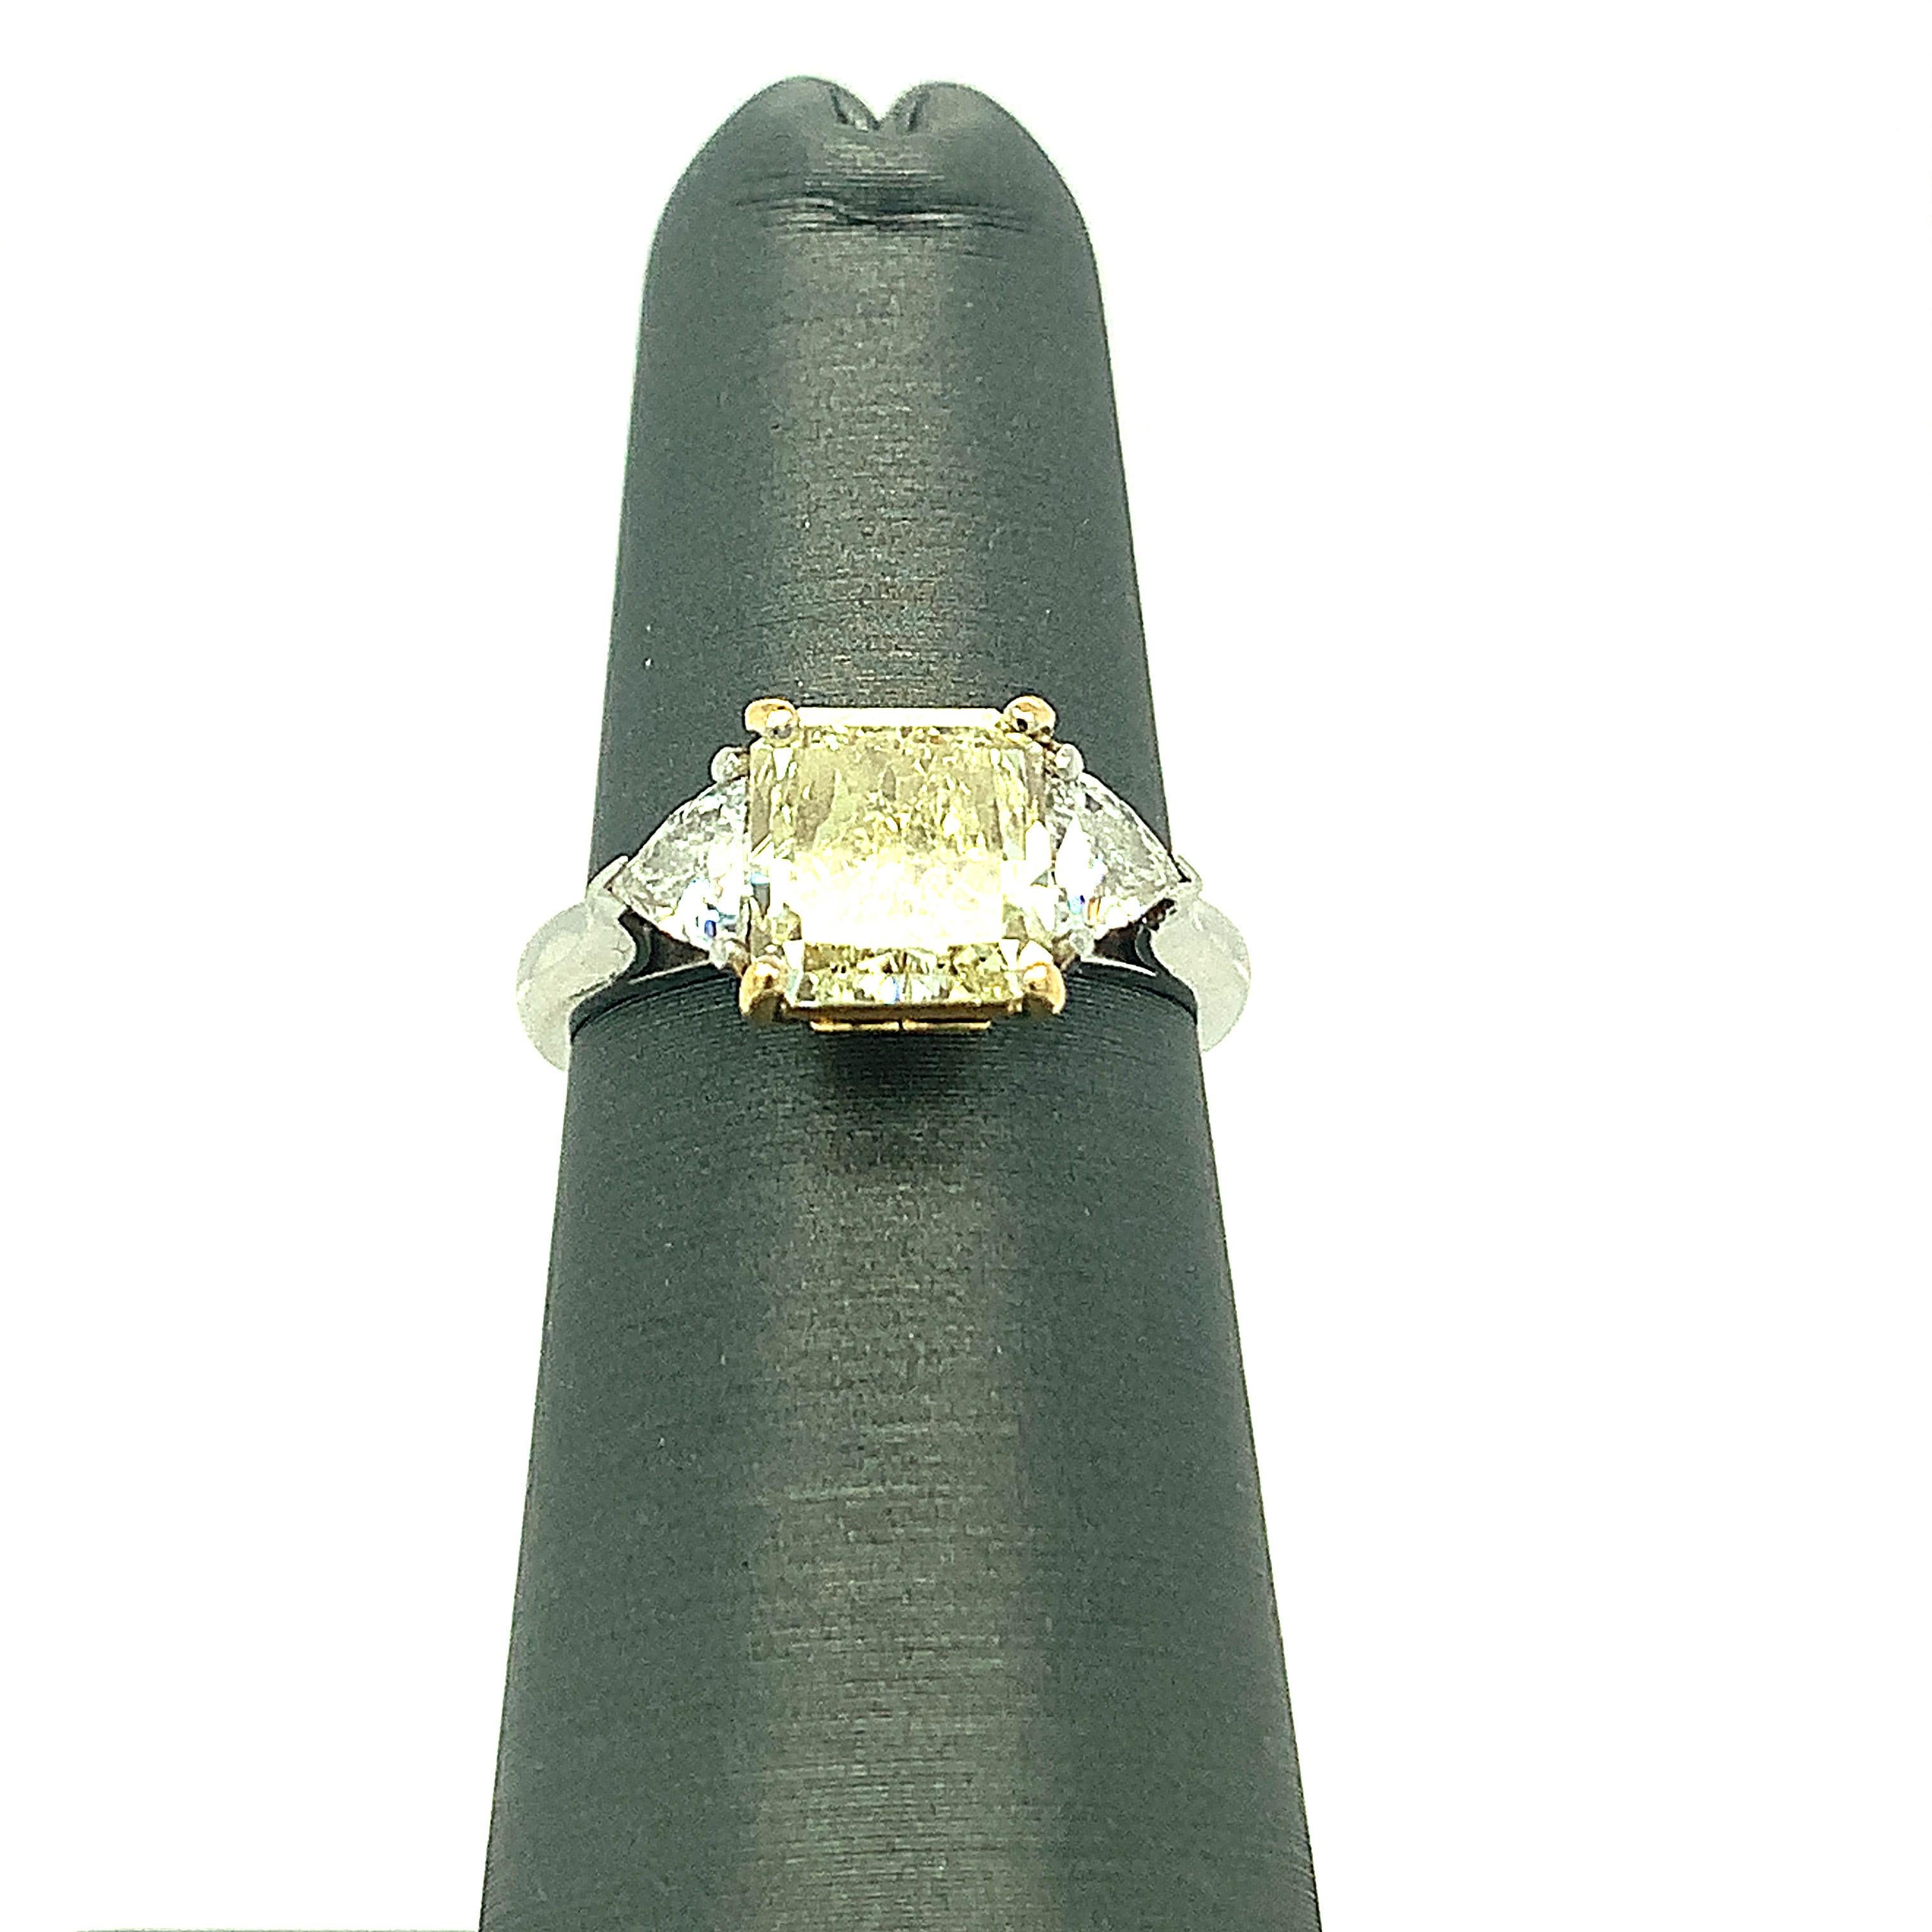 1.83 Karat Eckiger Quadratischer Schliff Fancy Hellgelber Diamant wird von einem GIA-Zertifikat begleitet. Der brillante Mittelstein sitzt auf einer Fassung aus 18 Karat Gelbgold mit Platinband. Zwei perfekt aufeinander abgestimmte weiße Diamanten